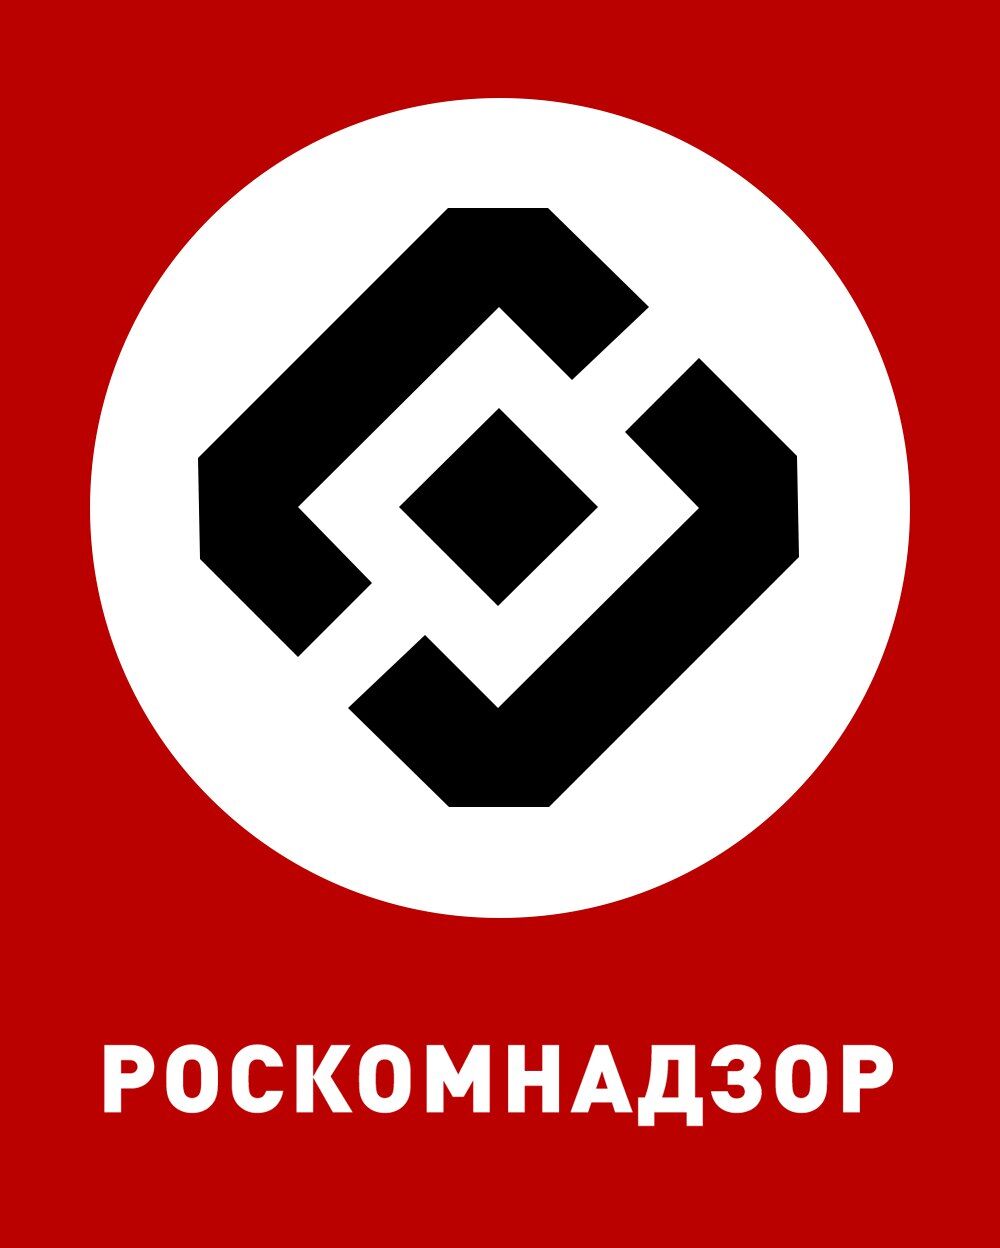 Як нацисти: Дуров висміяв Роскомнадзор